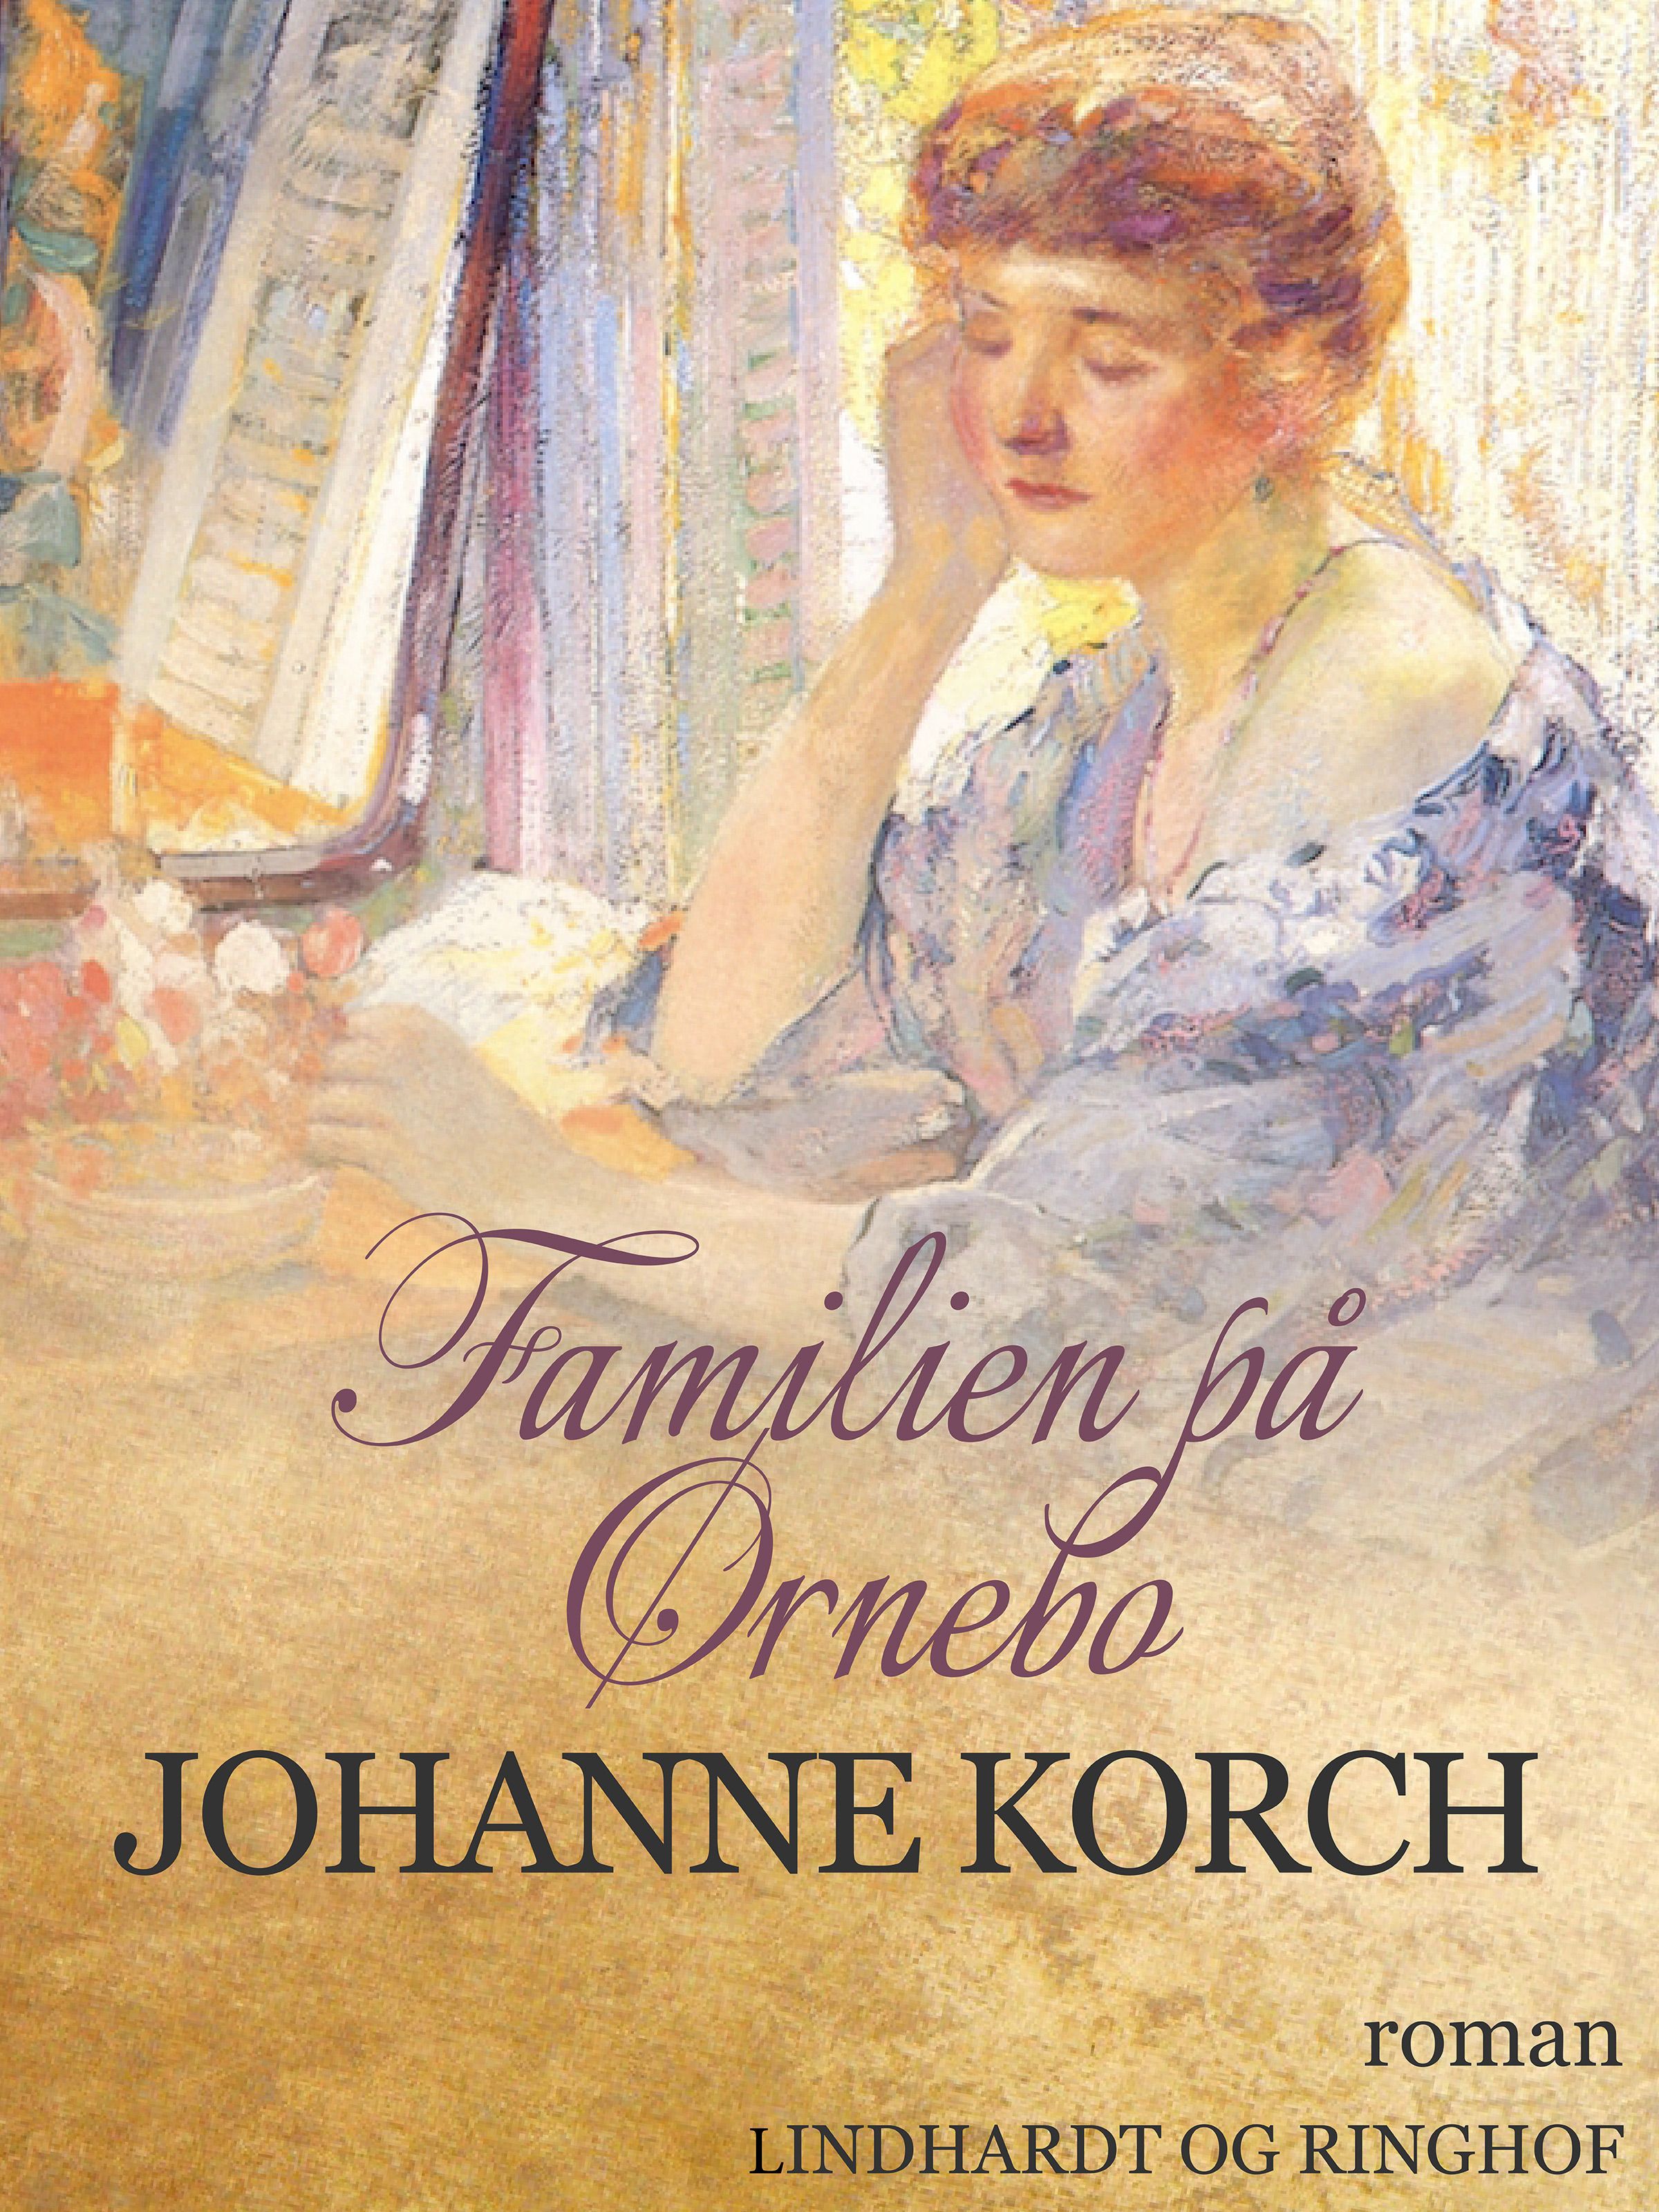 Familien på Ørnebo, ljudbok av Johanne Korch